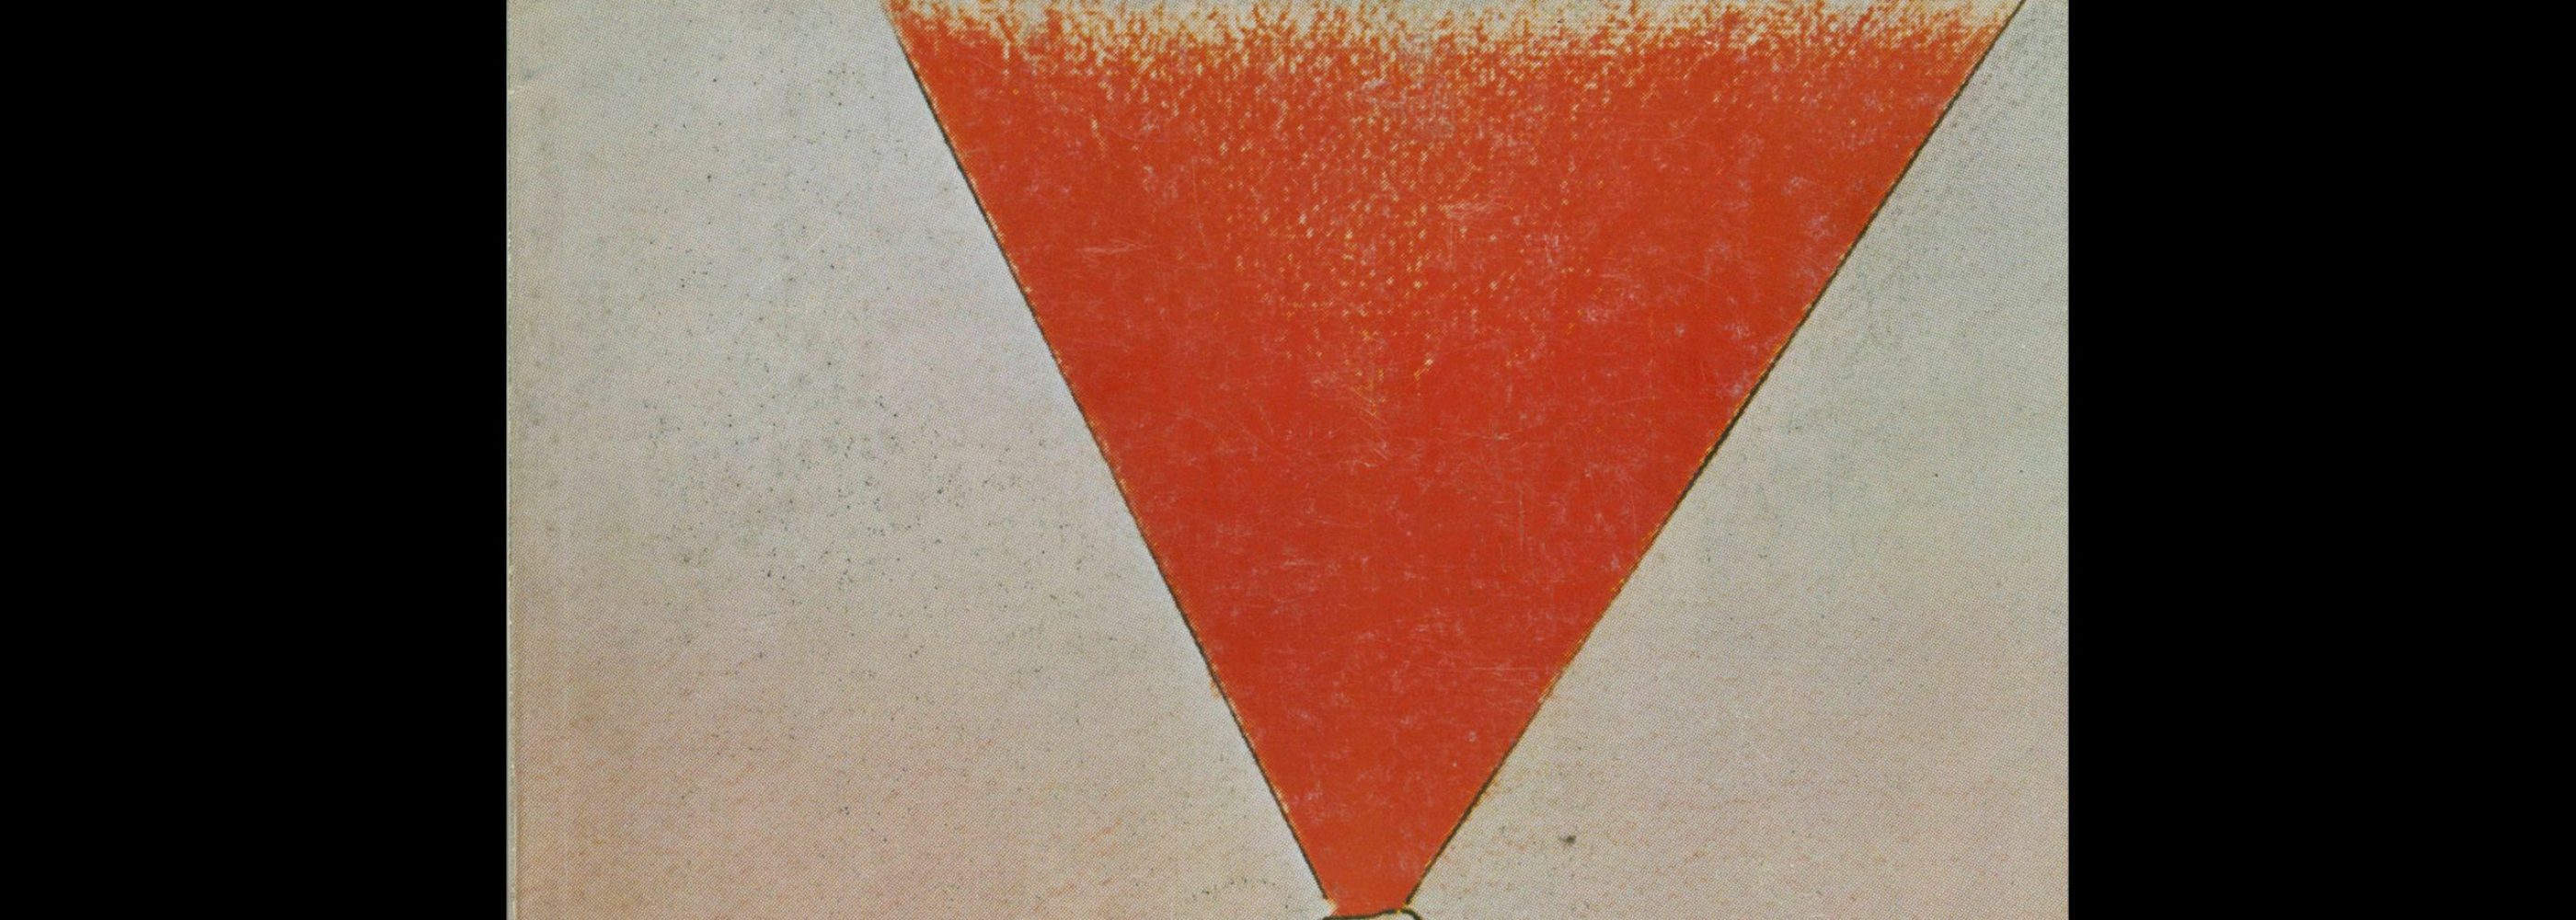 Novum Gebrauchsgraphik, 12, 1979. Cover design by Roland Topor